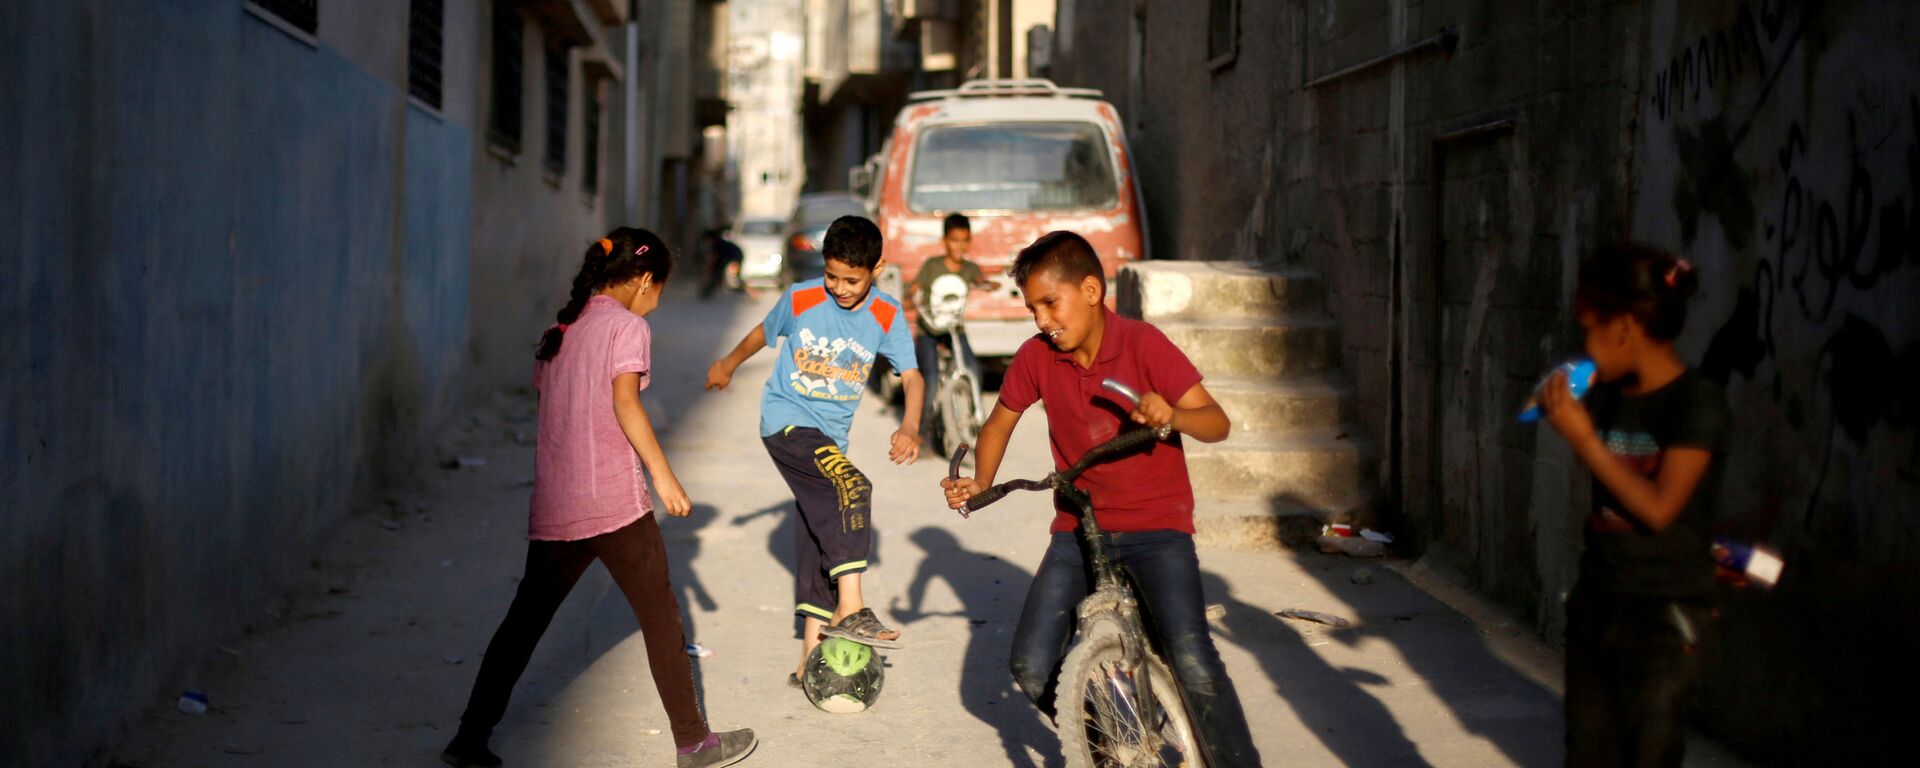 أطفال فلسطينيون يلعبون الكرة في أحد شوارع مخيم البقعة بالقرب من عمان، الأردن 29 مايو/ أيار 2018 - سبوتنيك عربي, 1920, 11.06.2020